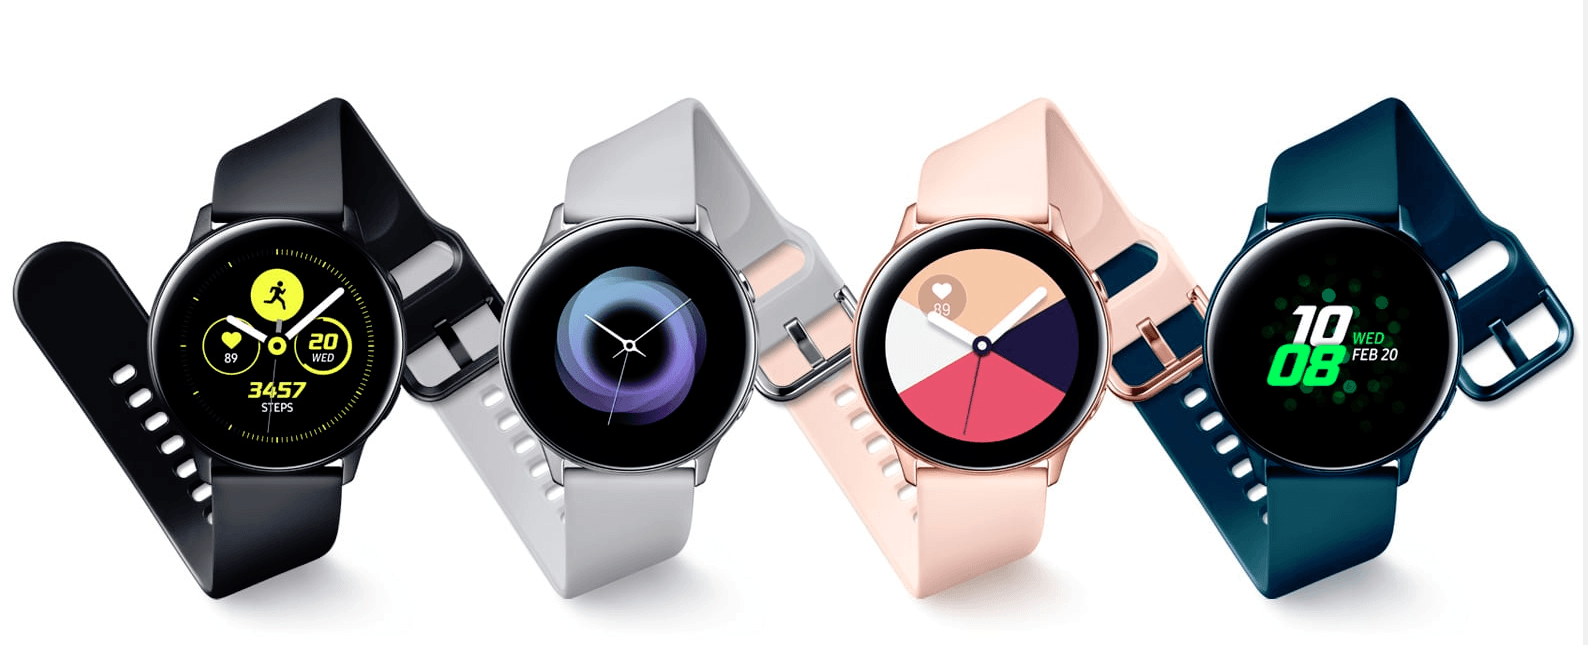 Умные часы Samsung Galaxy Watch Active получили первое обновление (1 2)